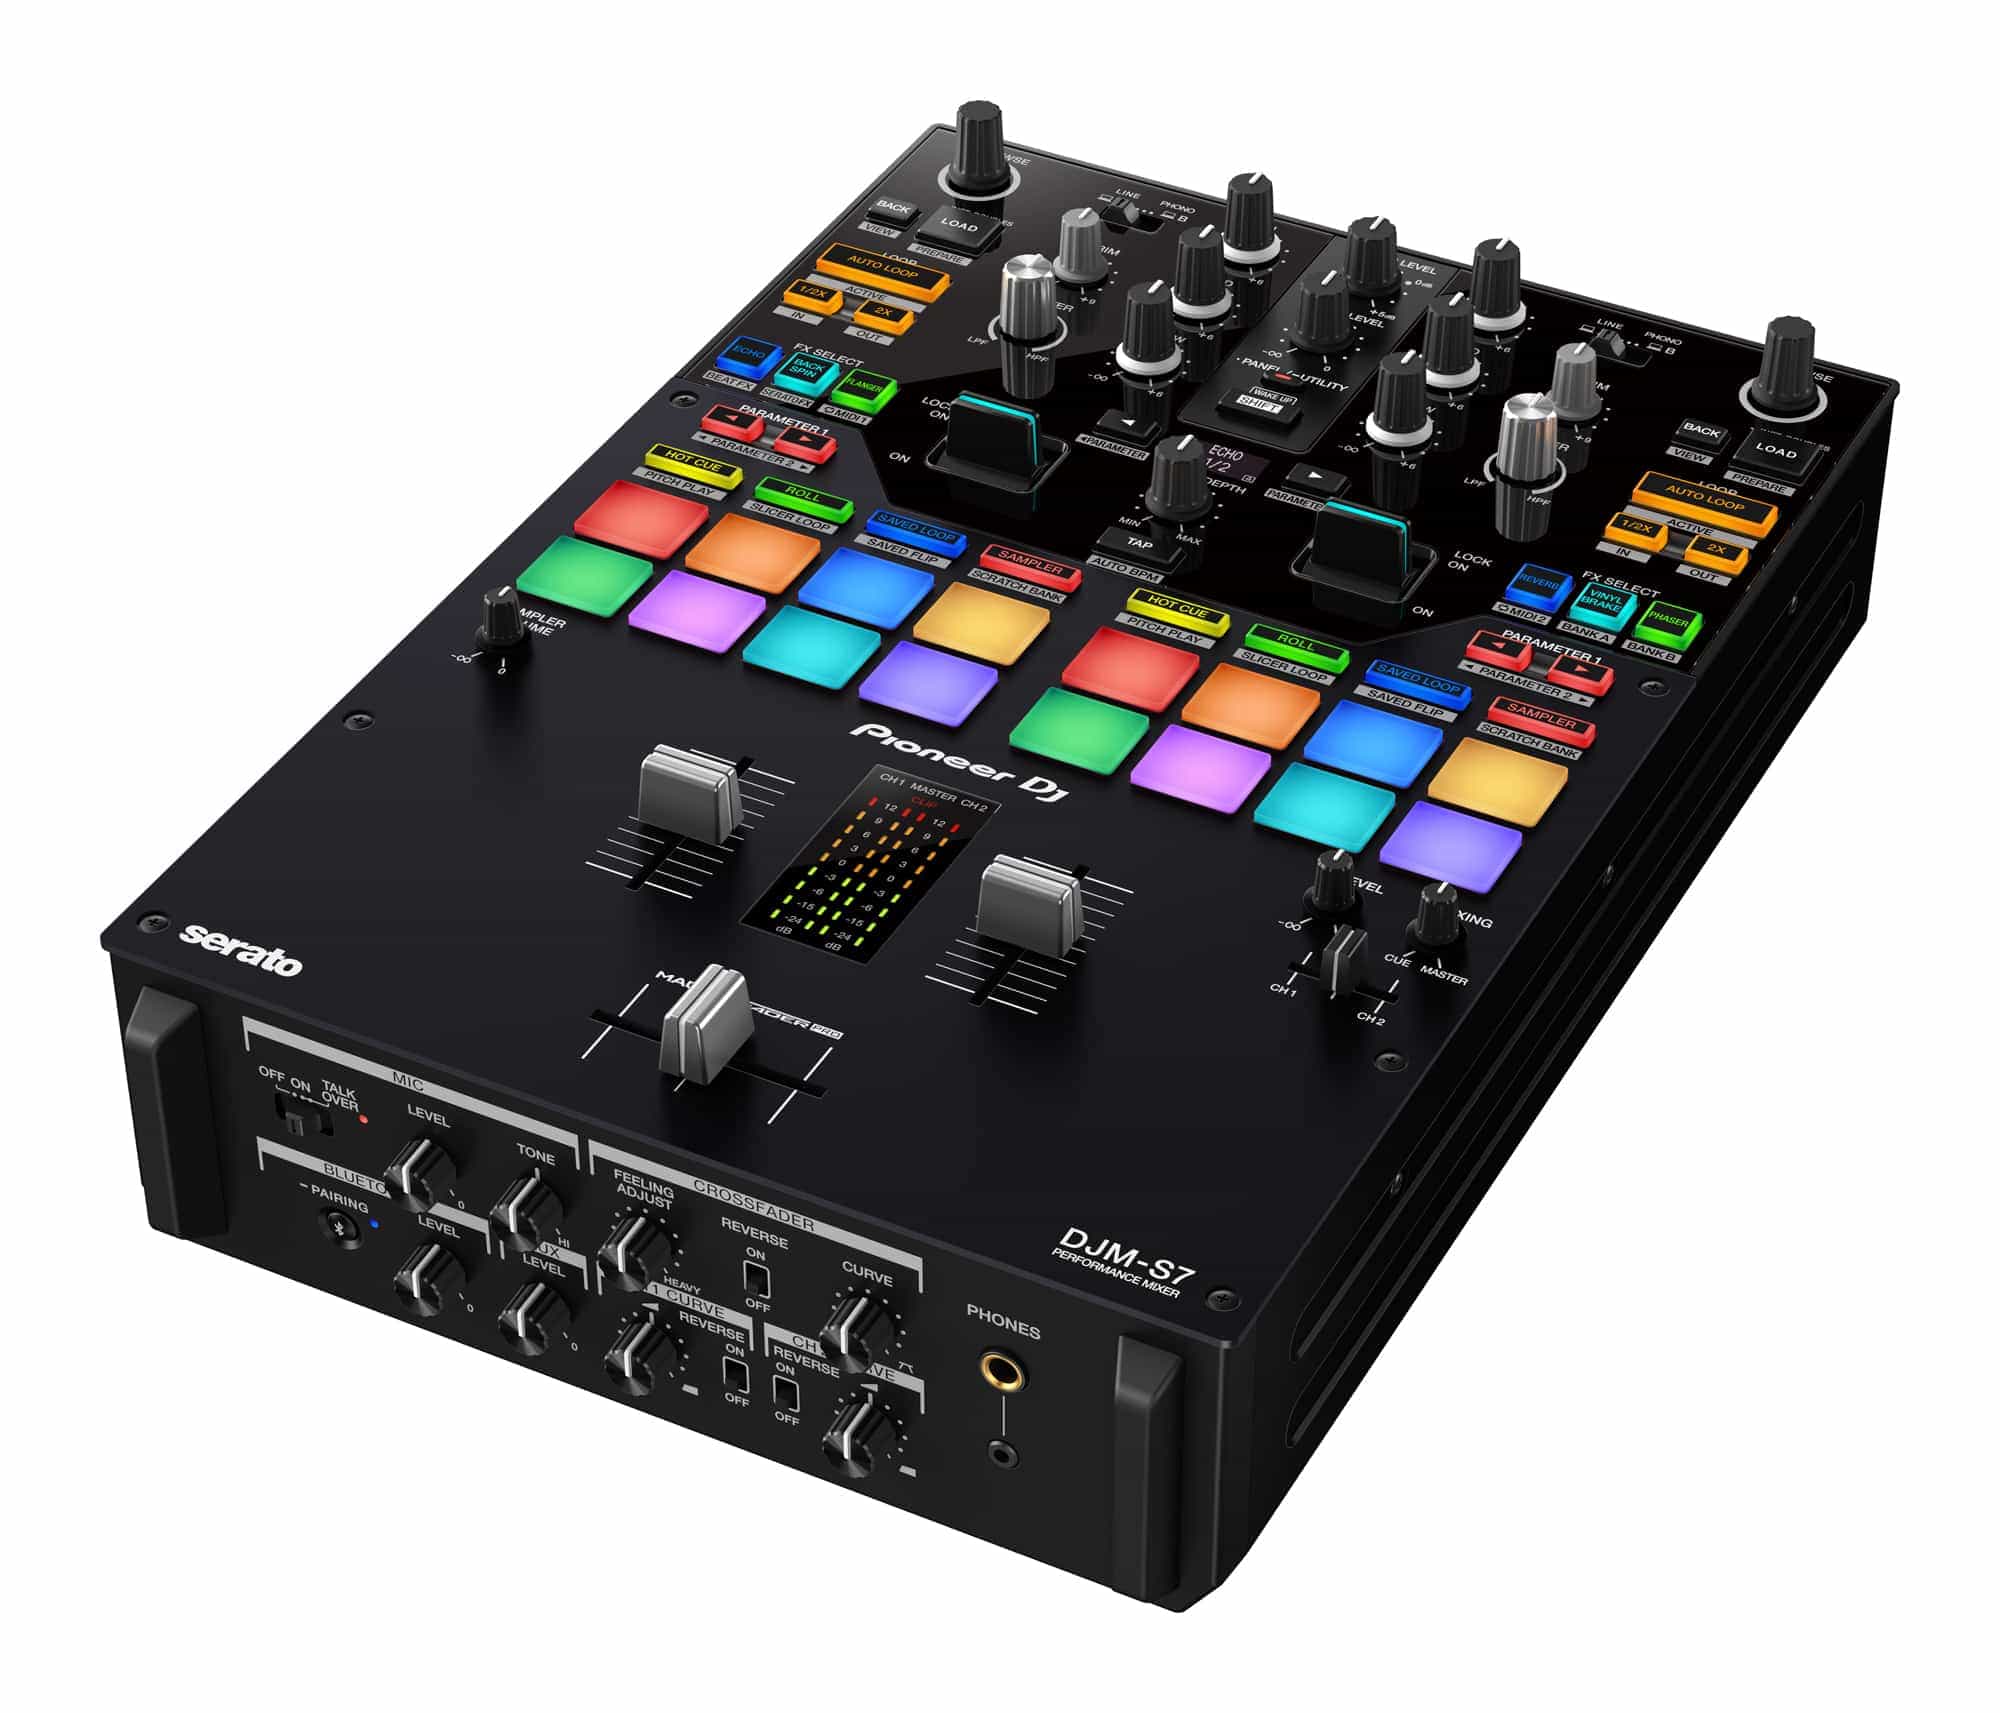 DJM-S7 de DJ Pioneer: un mezclador de batalla de 2 canales con la nueva función «Loop Midi»